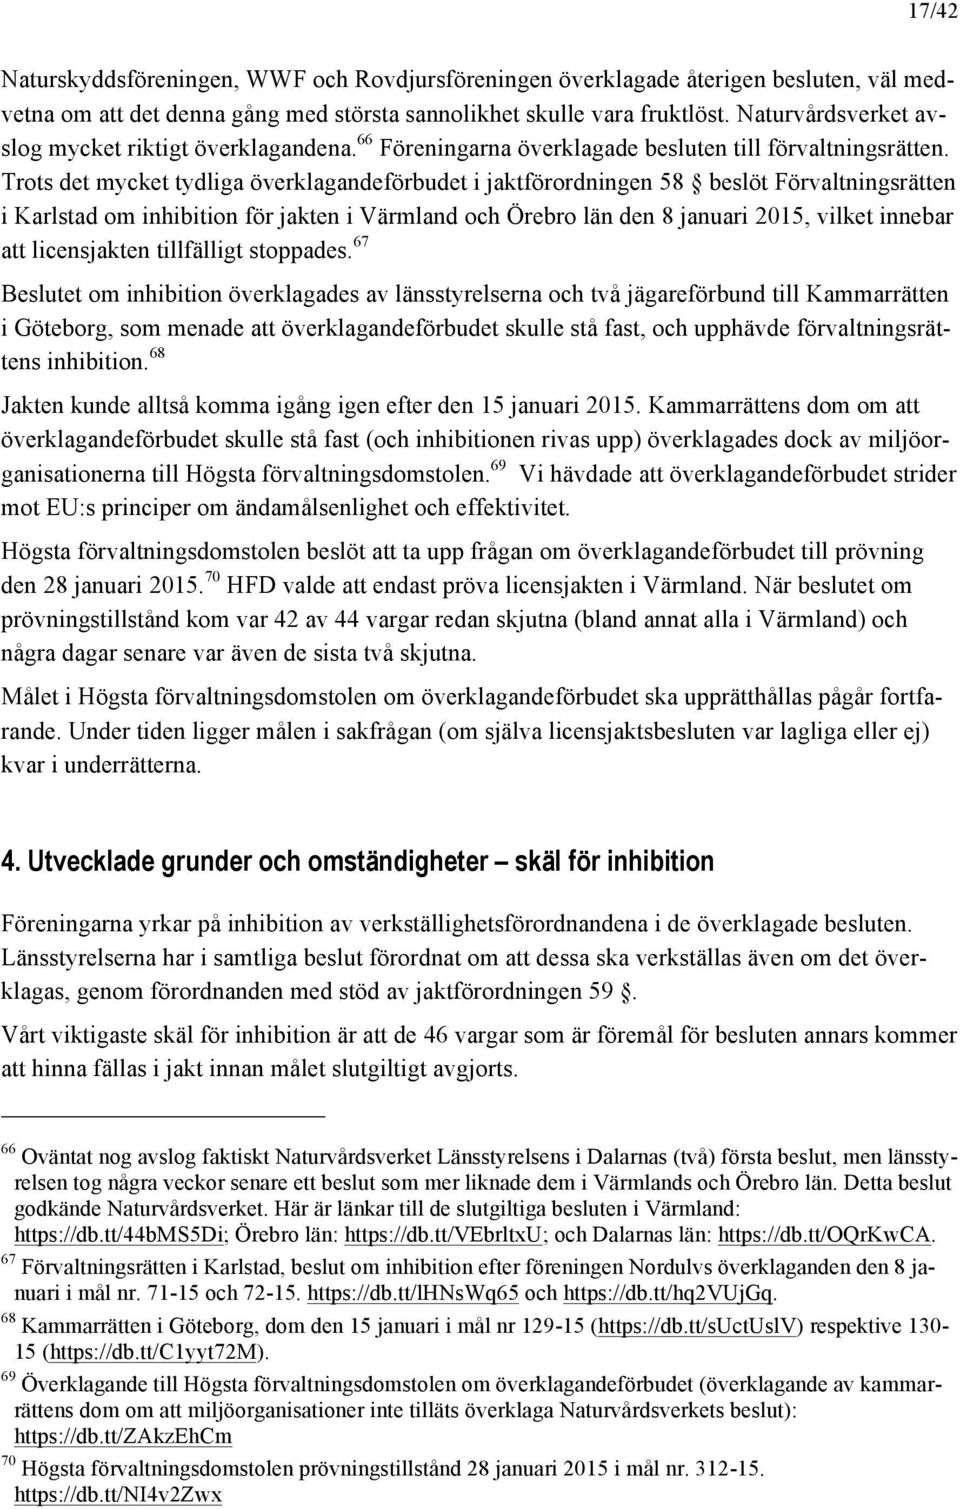 Trots det mycket tydliga överklagandeförbudet i jaktförordningen 58 beslöt Förvaltningsrätten i Karlstad om inhibition för jakten i Värmland och Örebro län den 8 januari 2015, vilket innebar att